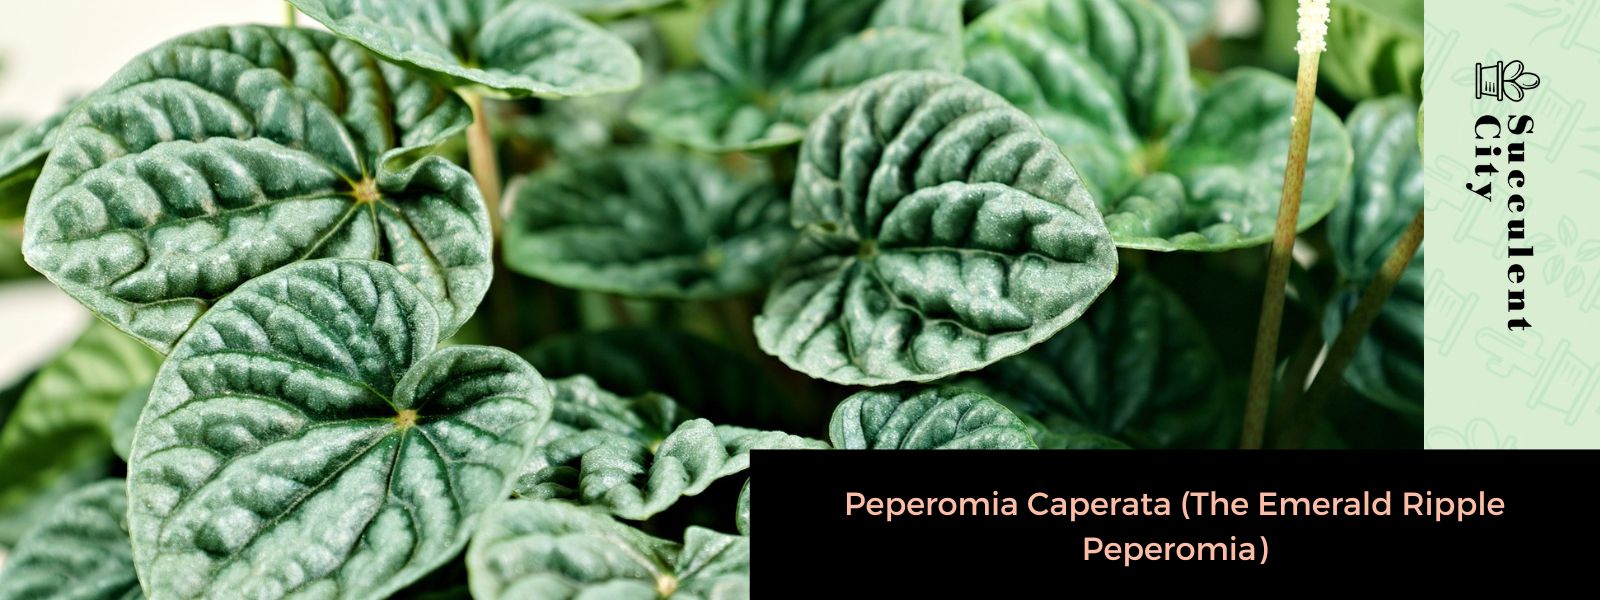 Peperomia caperata (peperomia de onda esmeralda)